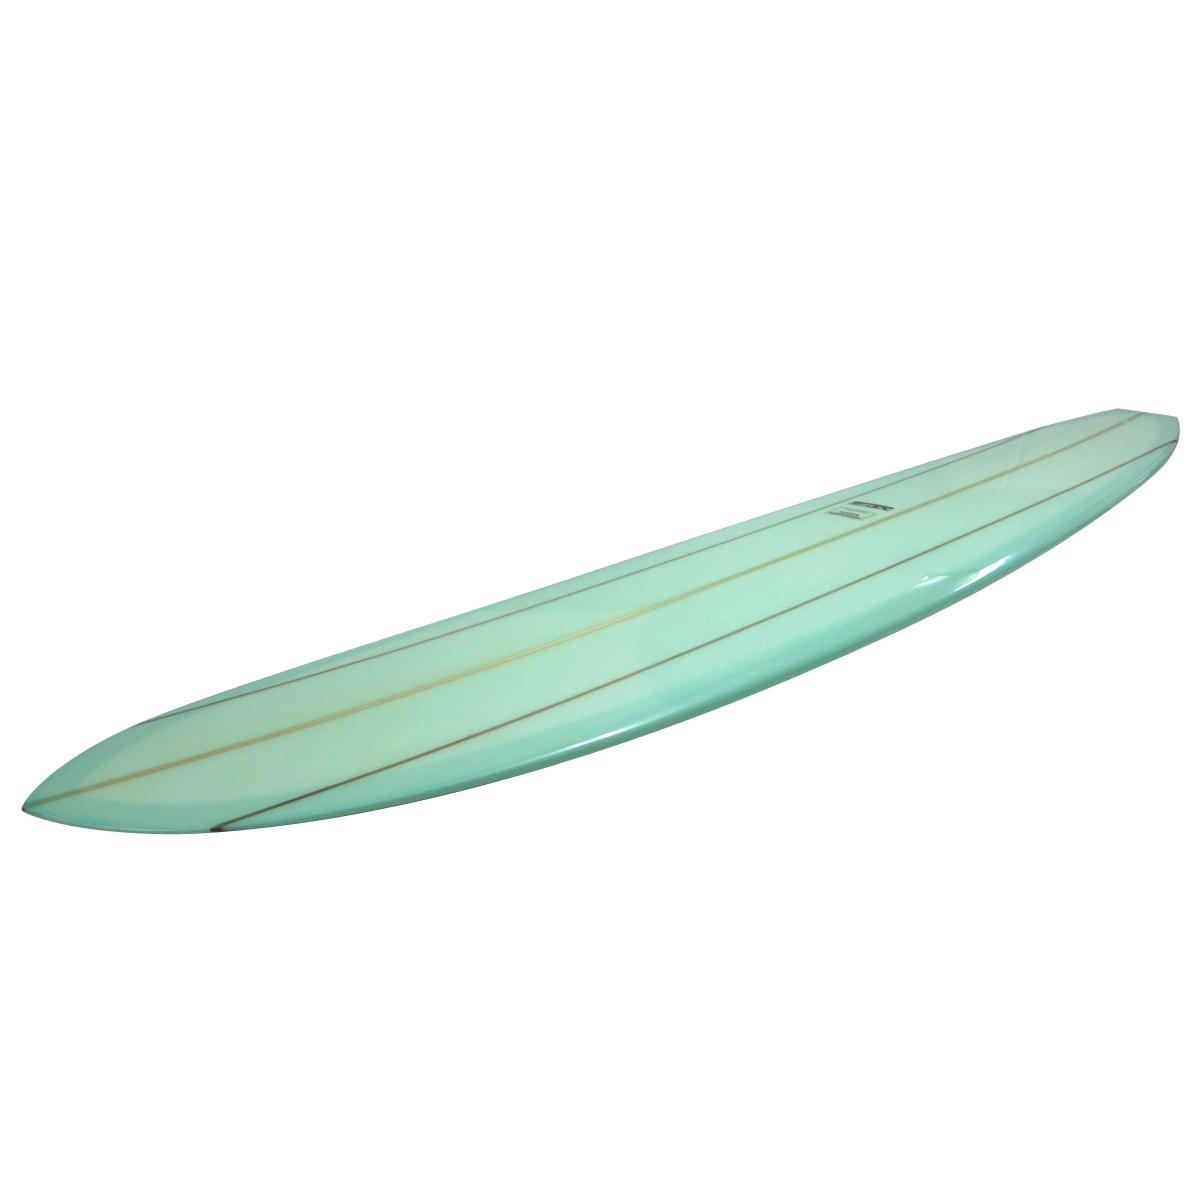 SURFBOARDS MAKAHA / Vintage Performance2 ClarkFoam